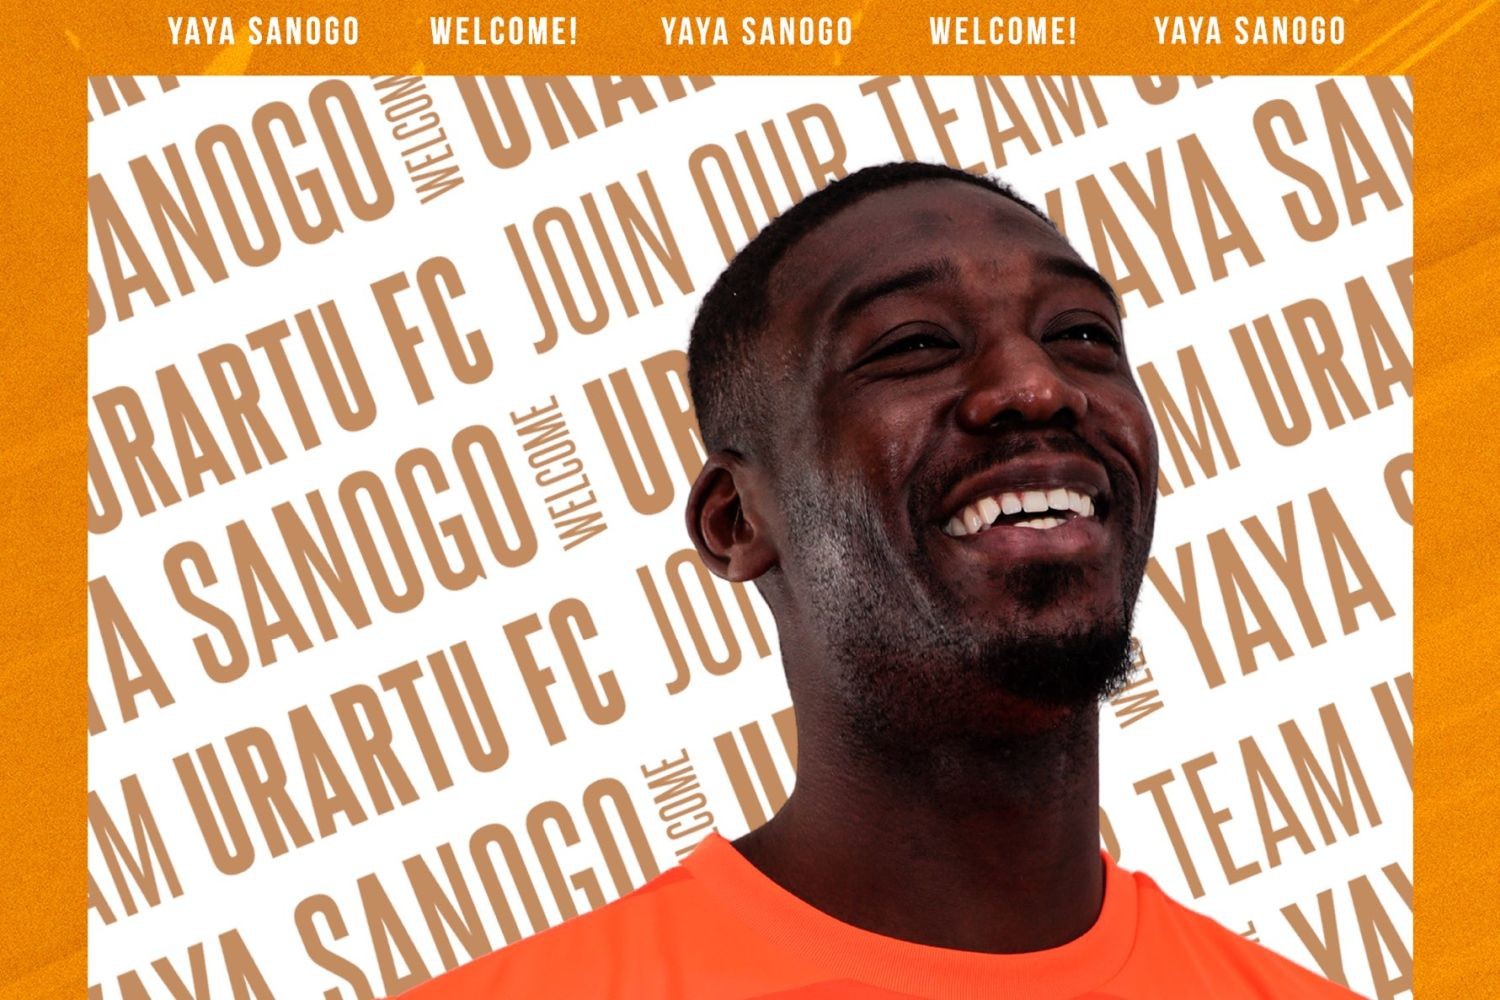 OFICJALNIE: Yaya Sanogo nie grał w piłkę od 1 lipca 2021 roku. Wreszcie znalazł klub!